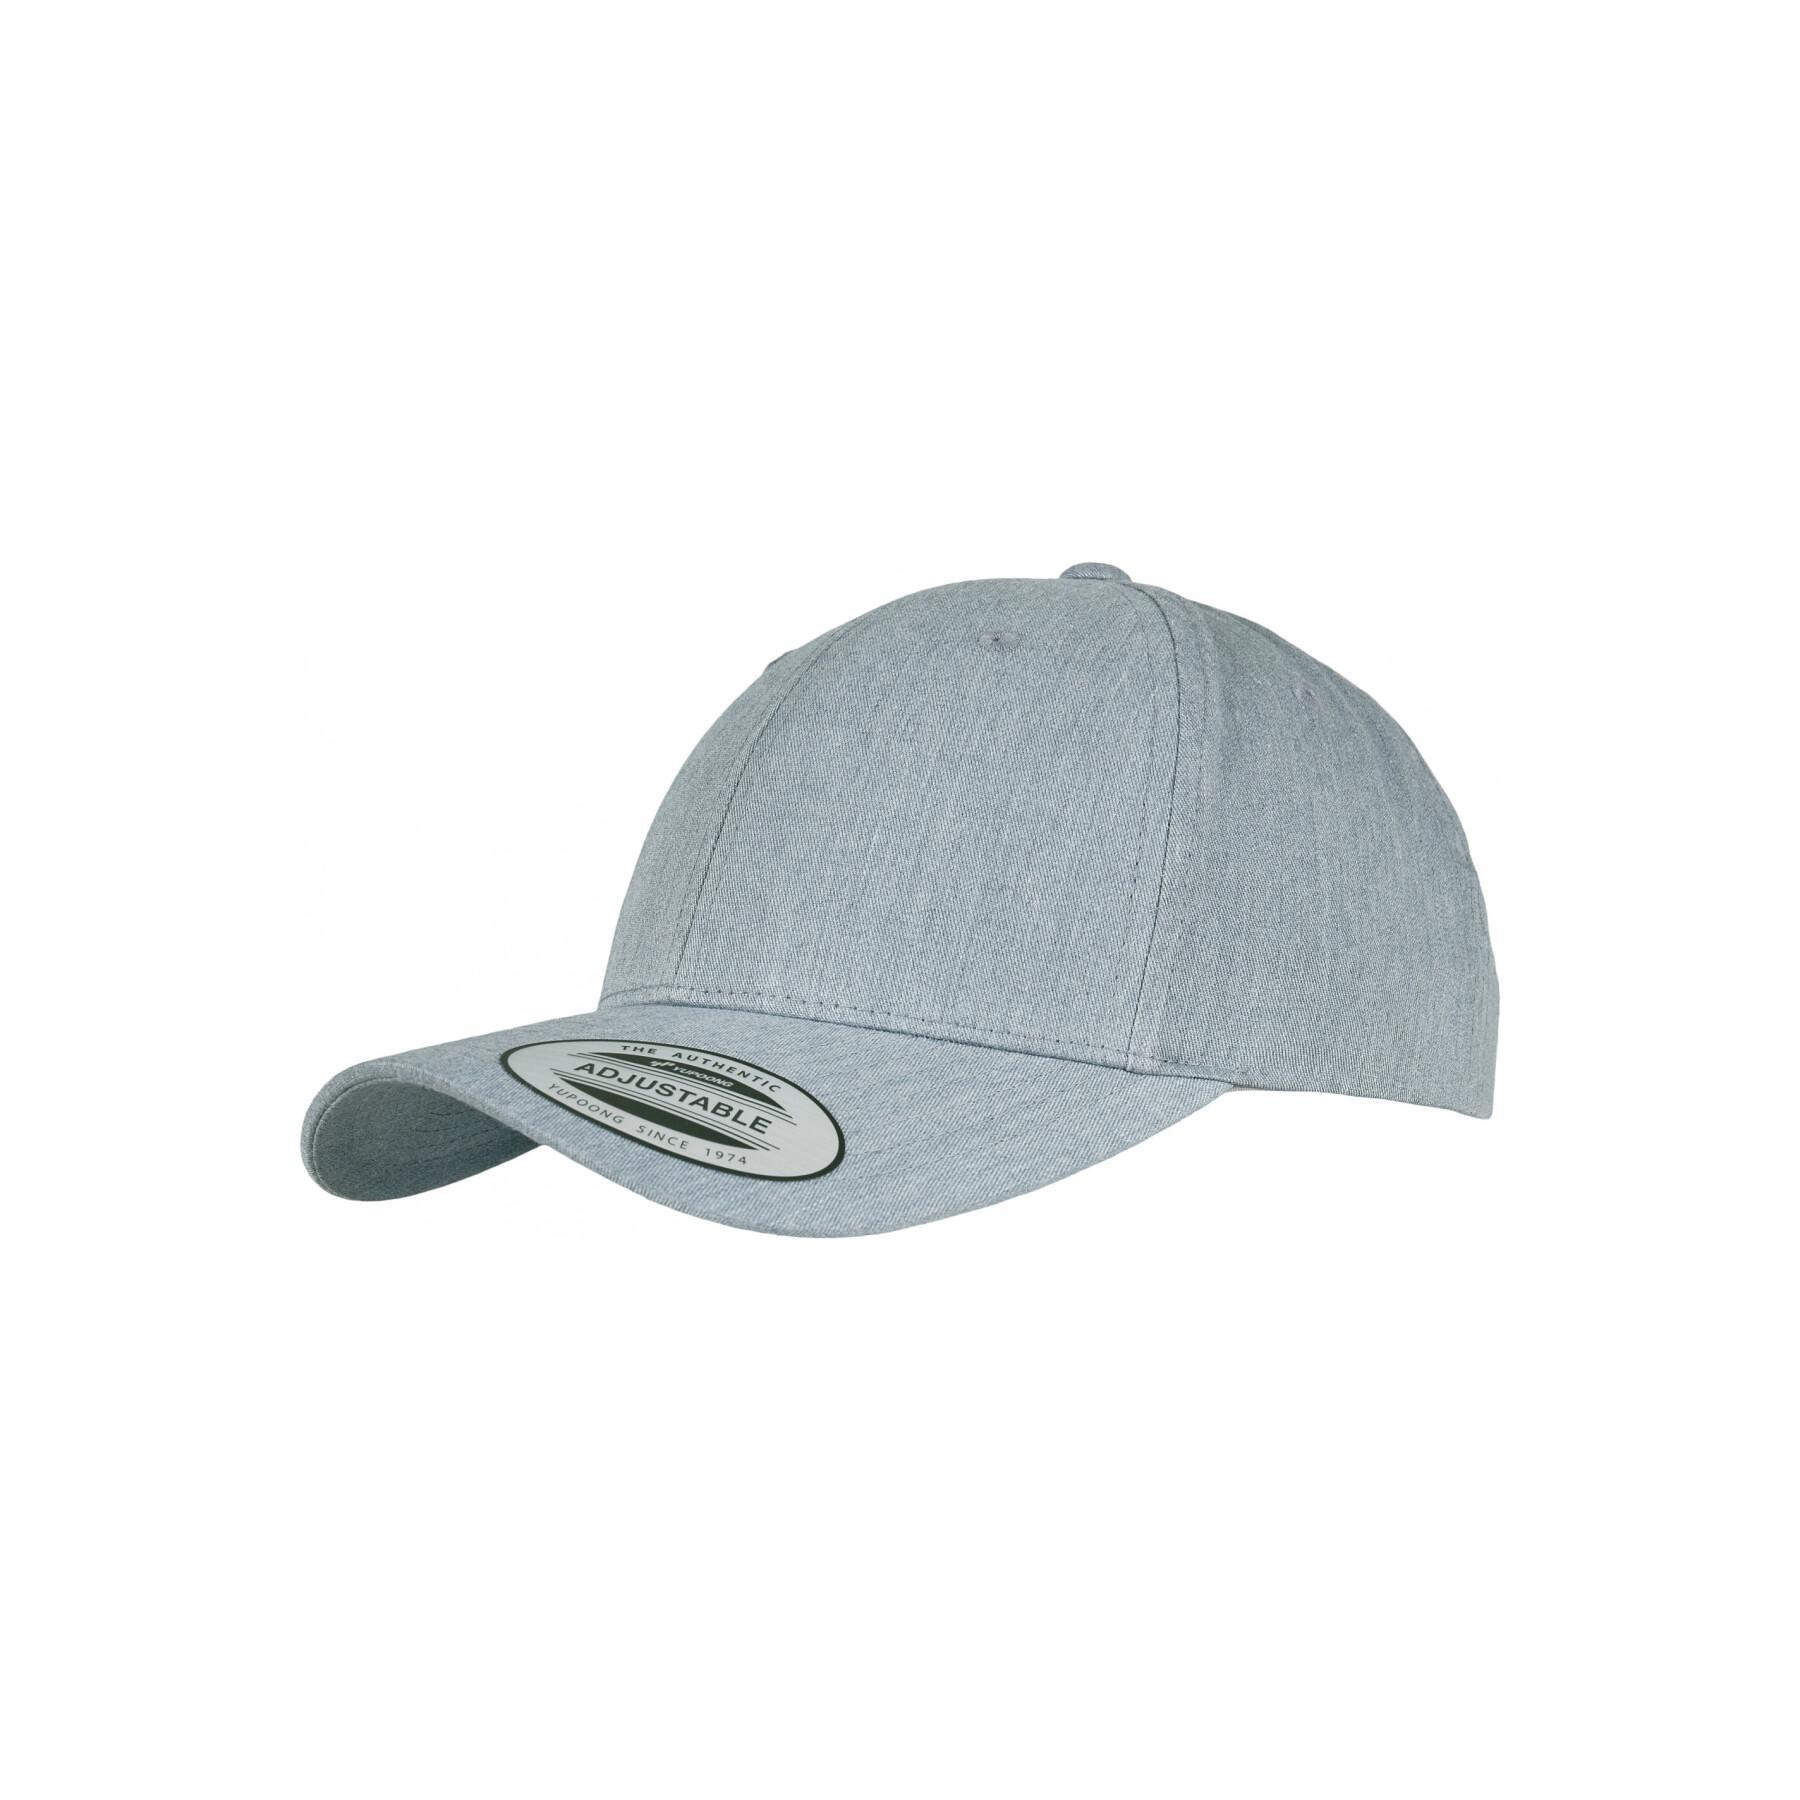 Baseball caps - cap Accessories Headwear - Classic - curved Flexfit